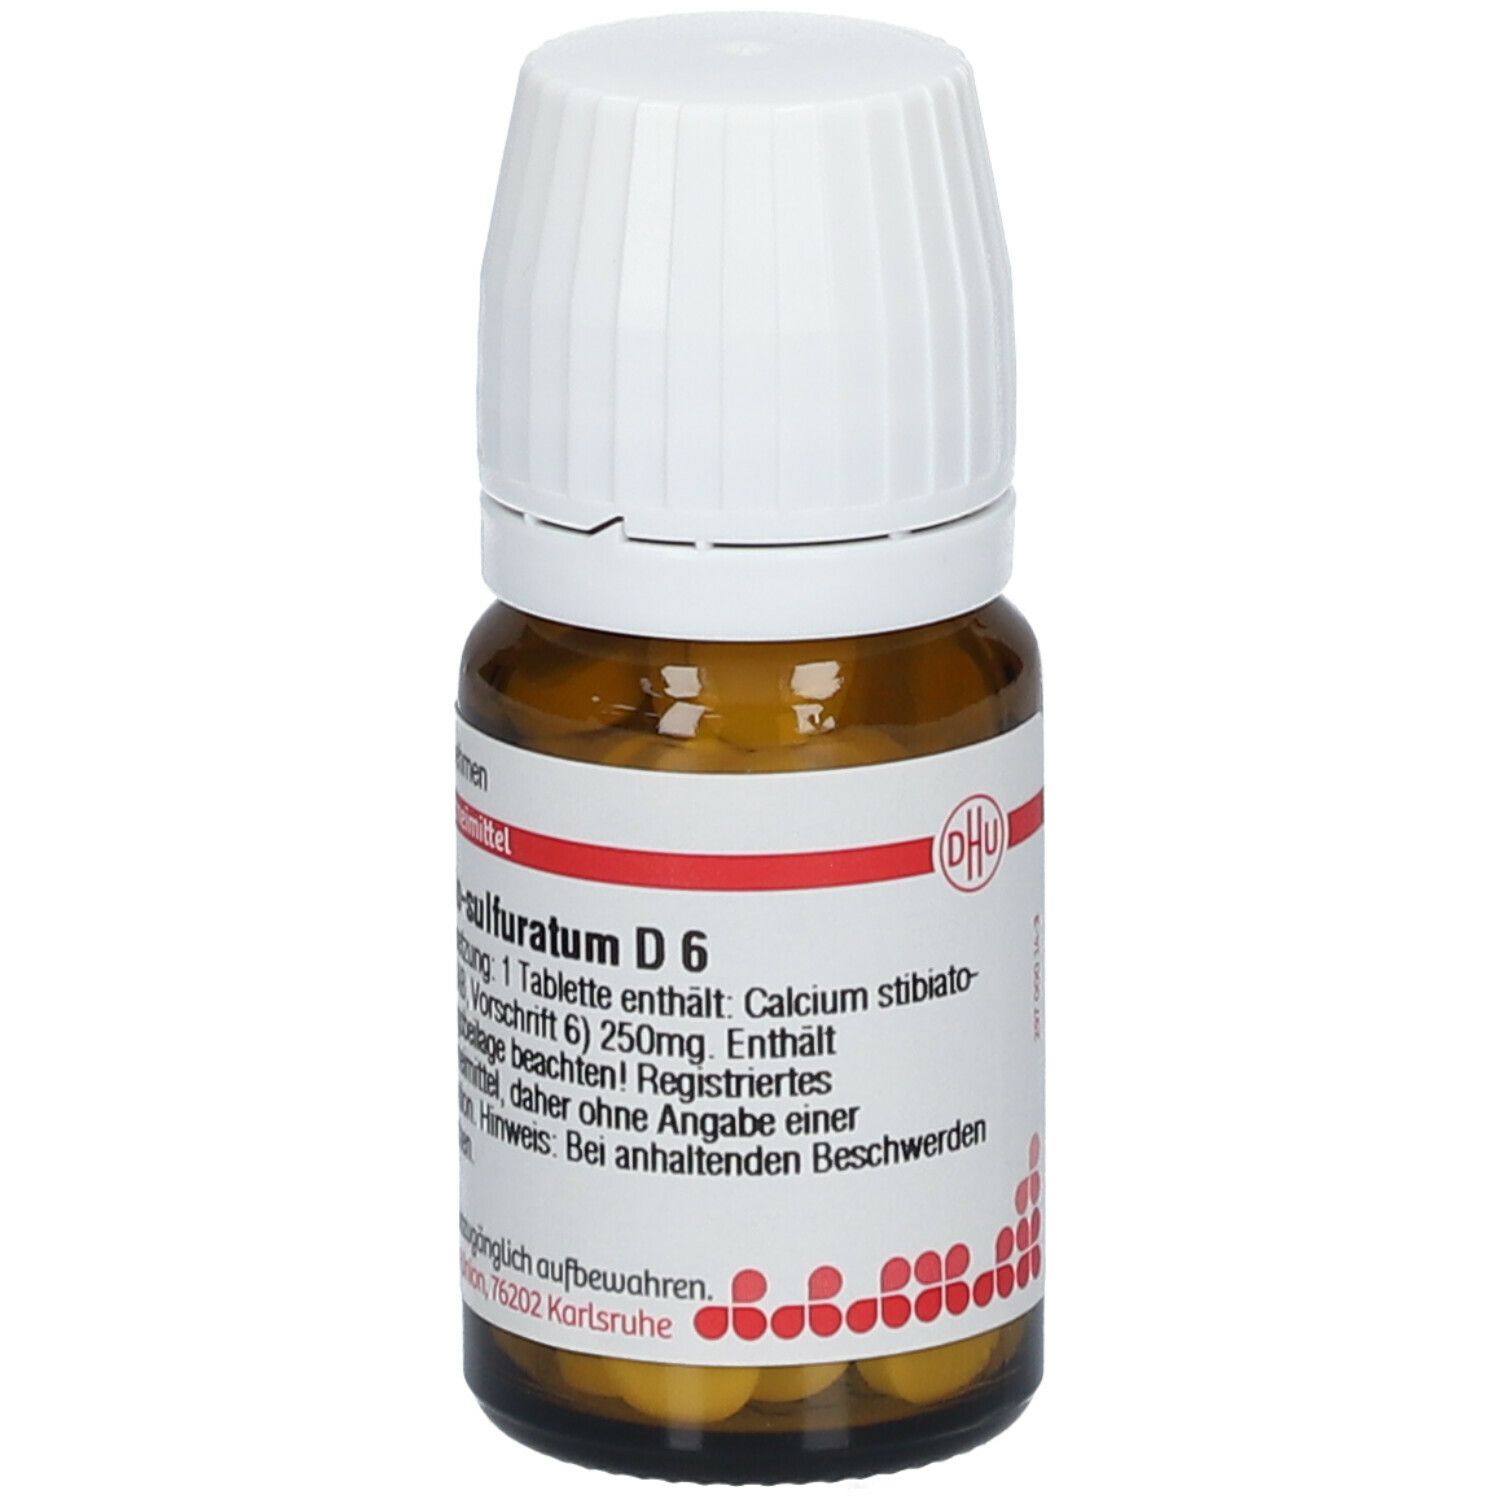 DHU Calcium Stibiato-Sulfuratum D6